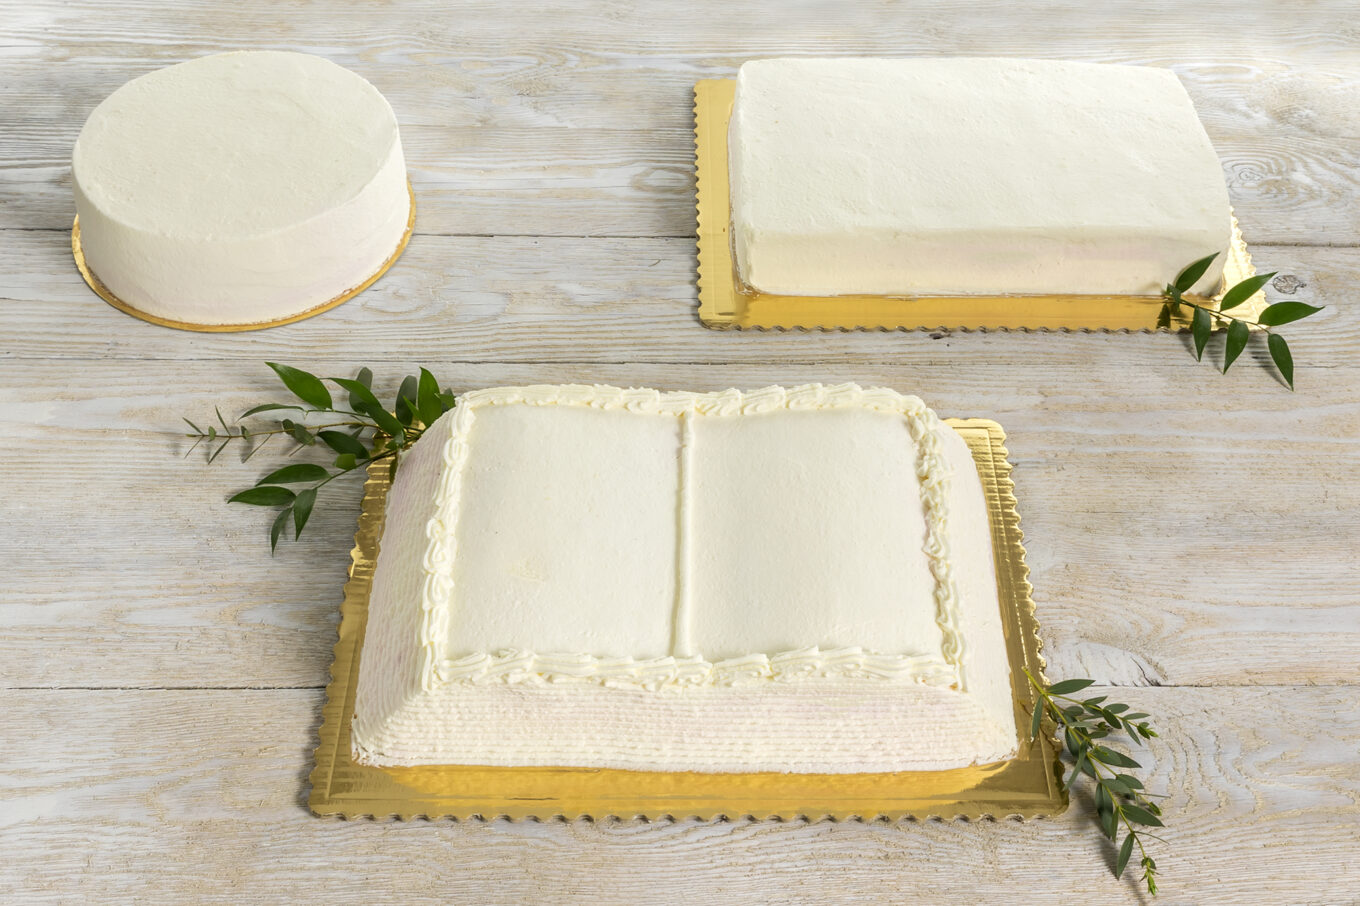 forme di torta Cukiernia Jacek Placek è sinonimo del gusto delle torte fatte in casa a base di prodotti naturali.